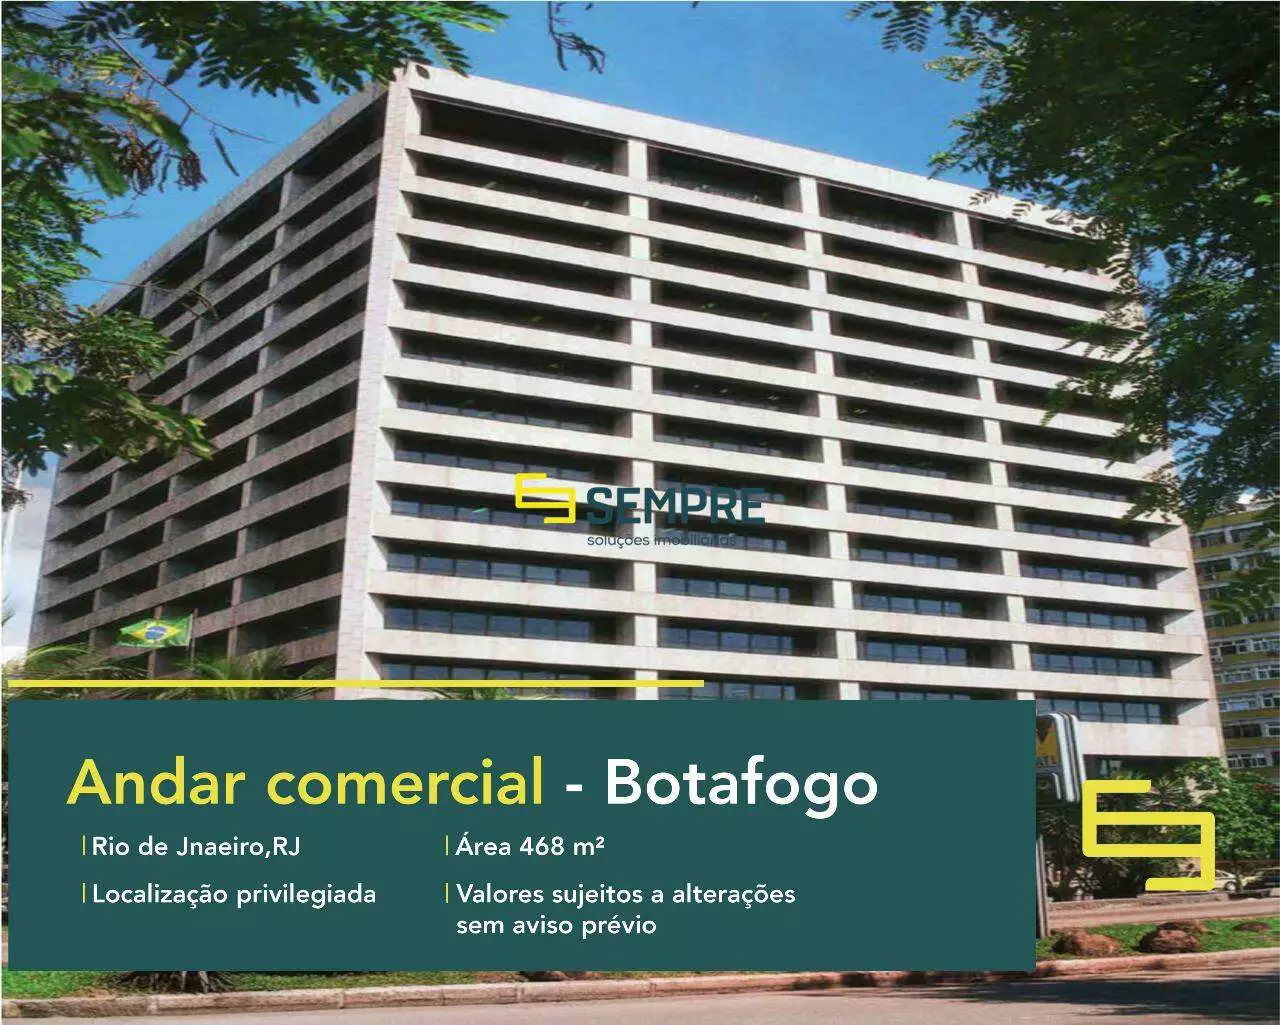 Andar comercial no Centro Empresarial Botafogo para alugar - RJ, excelente localização. O estabelecimento comercial conta com área de 468 m².